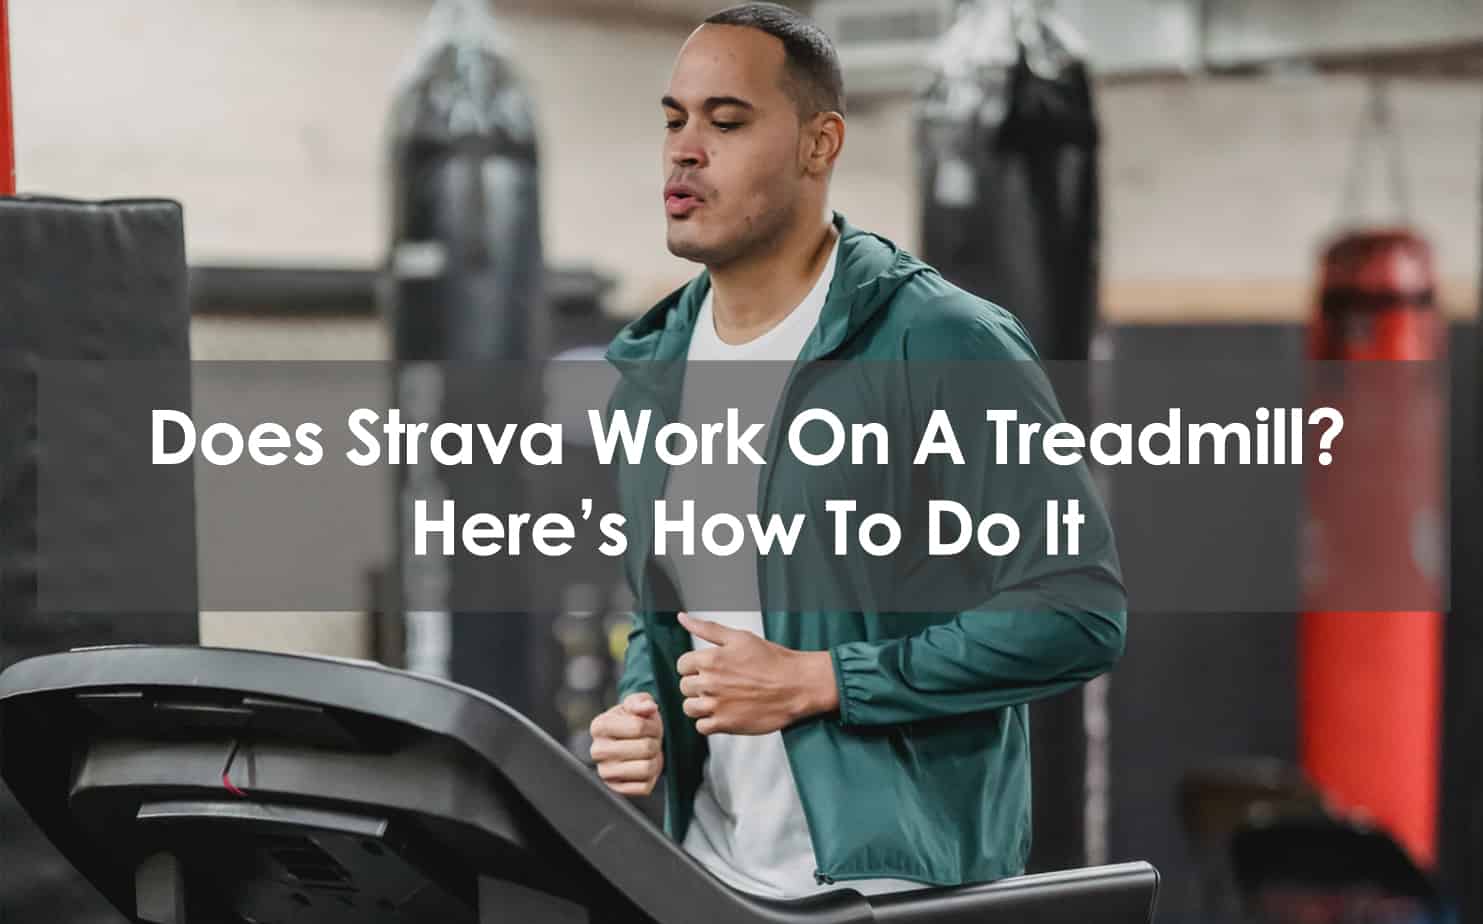 How to Use Strava on Treadmill 